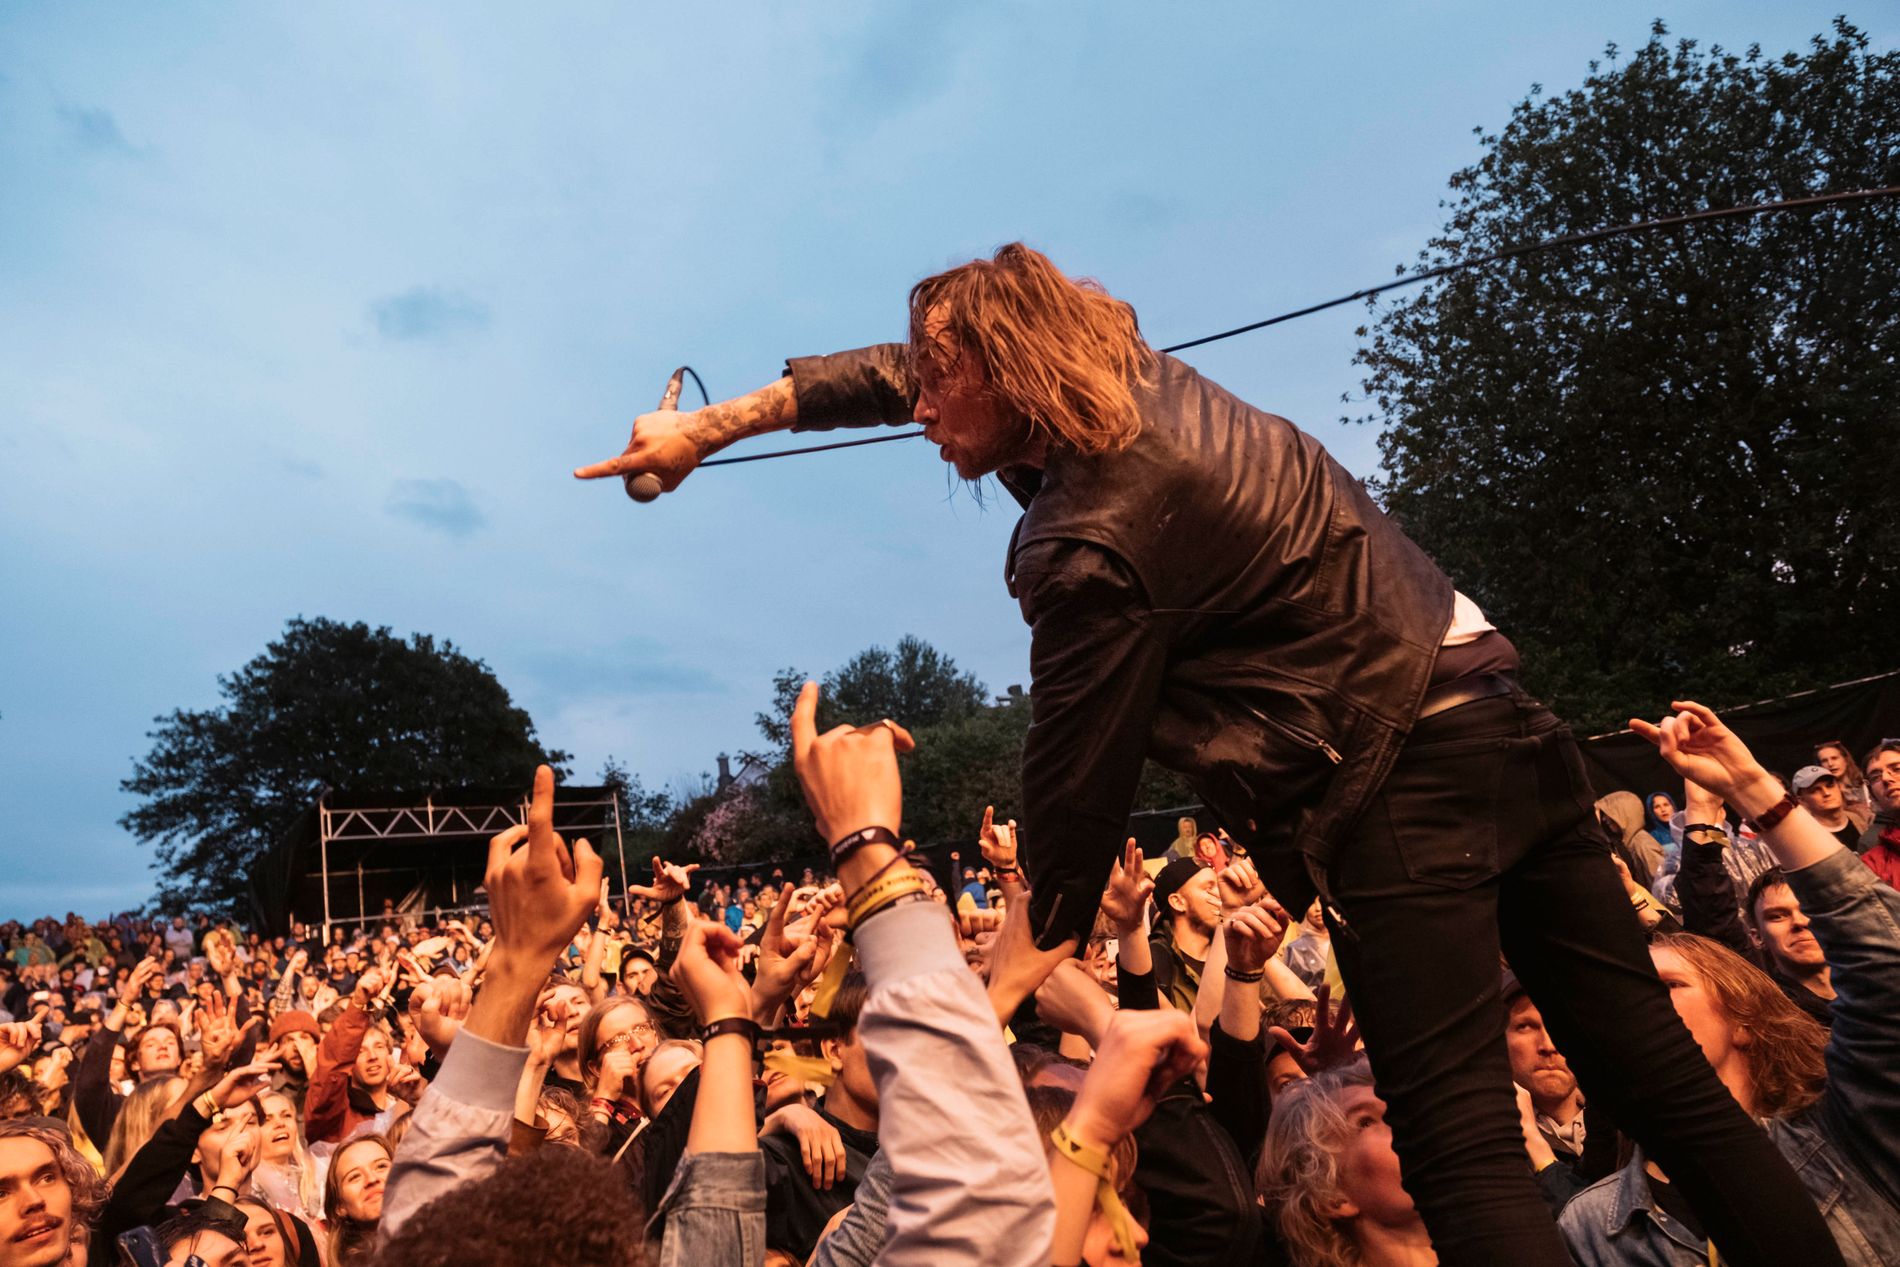 Kvelertaks vokalist Ivar Nikolaisen på Mablis-scenen i 2019. Foreløpig er ingen artister for 2021-versjonen annonsert.